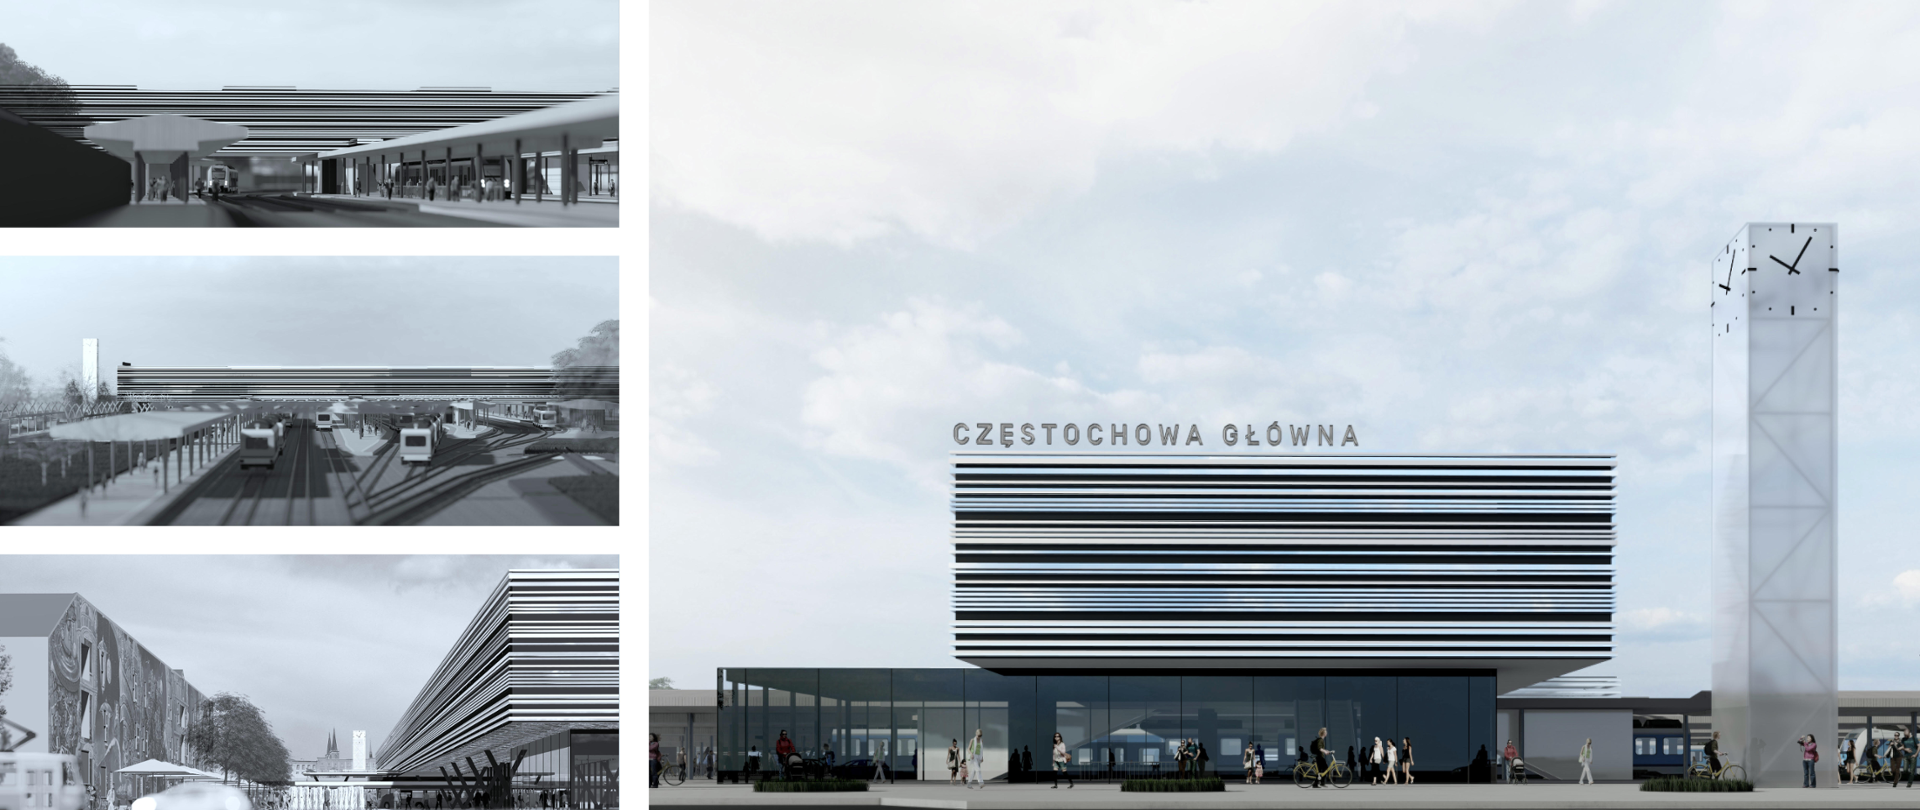 Rozpoczęły się prace projektowe dworca Częstochowa Główna